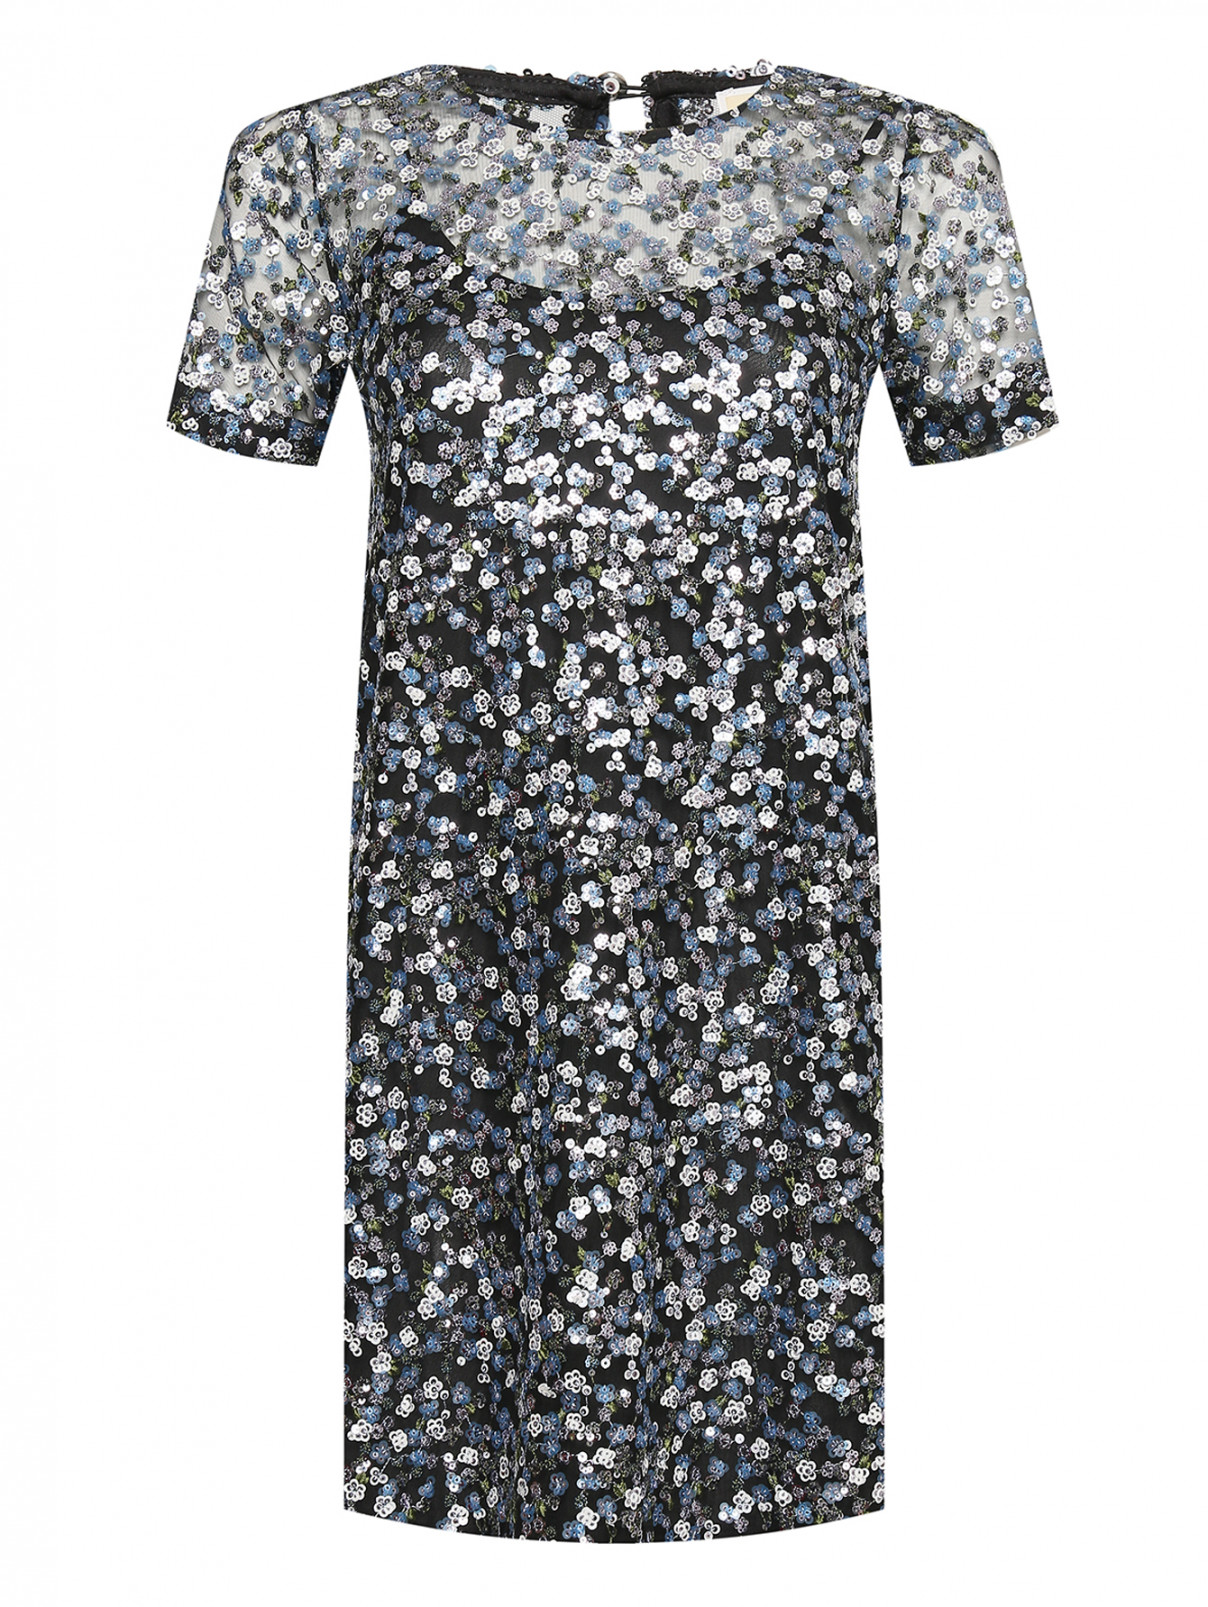 Платье декорированное пайетками Michael by MK  –  Общий вид  – Цвет:  Синий